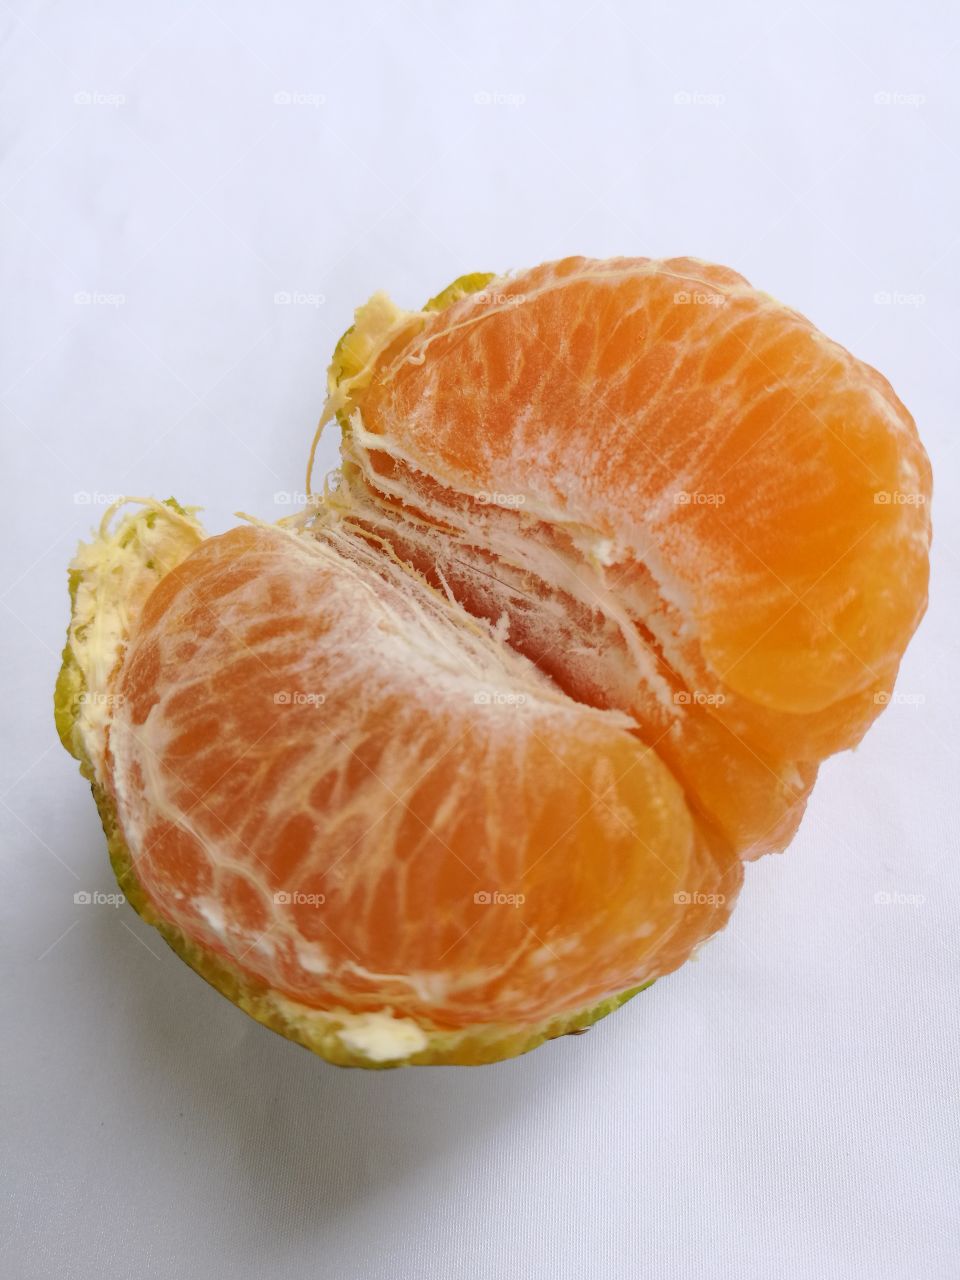 Closeup of peeled tangerine isolated on white background.